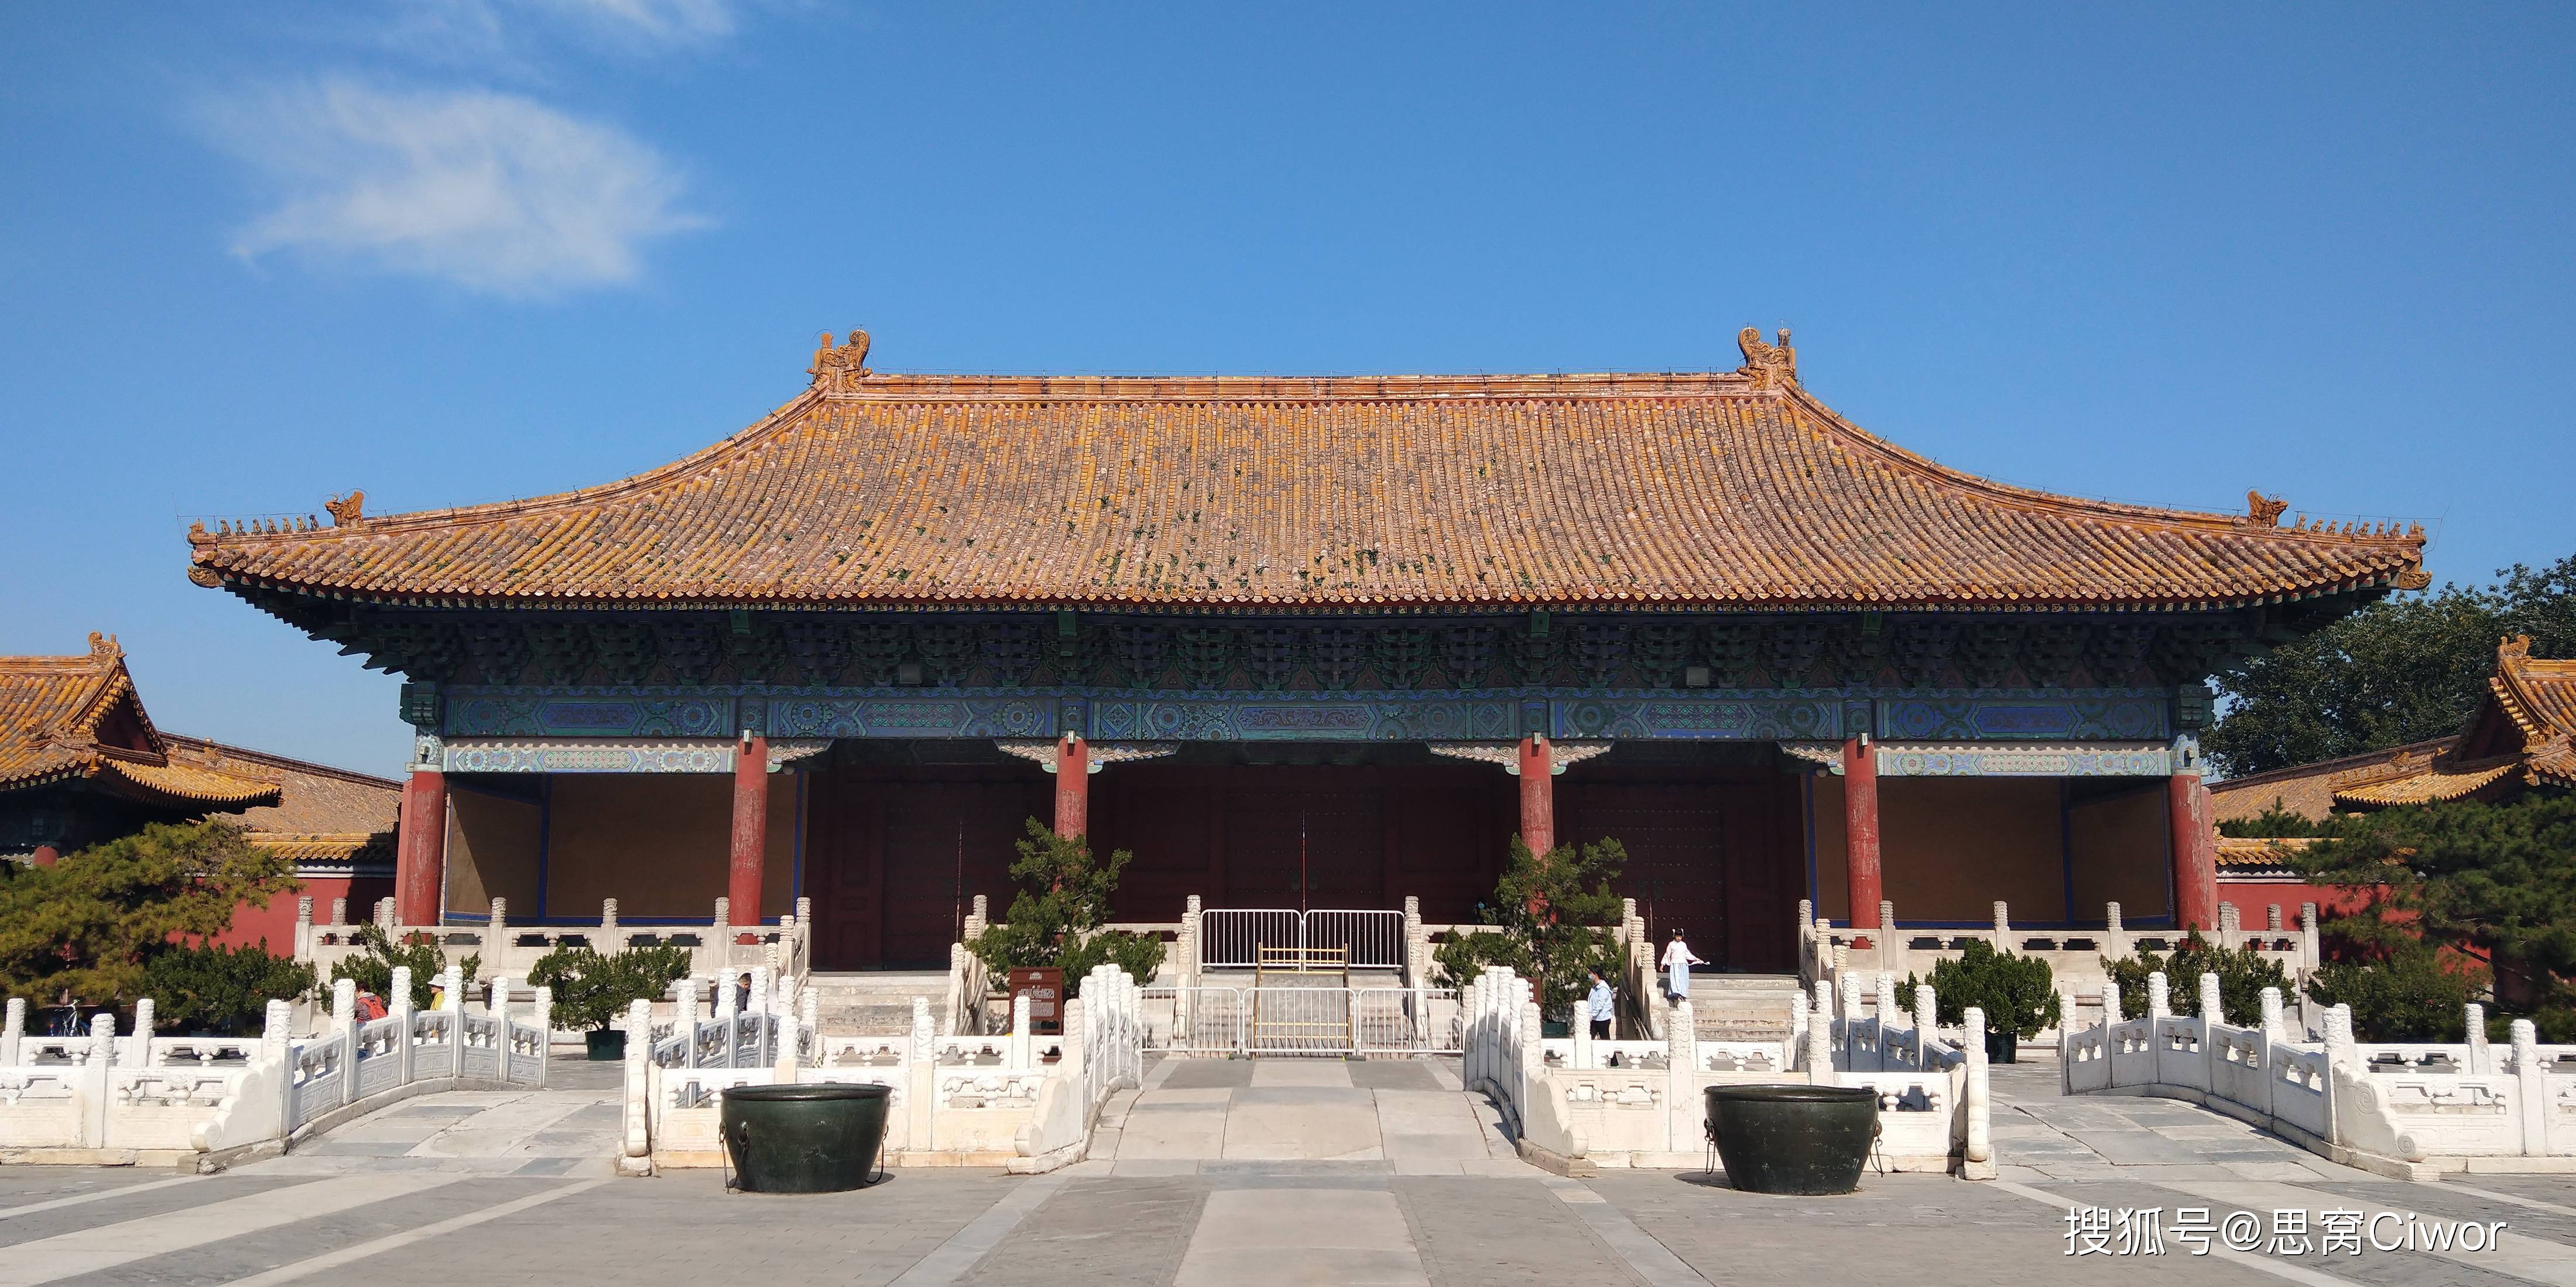 思窝花脸说北京中轴线:太庙 (北京市劳动人民文化宫)